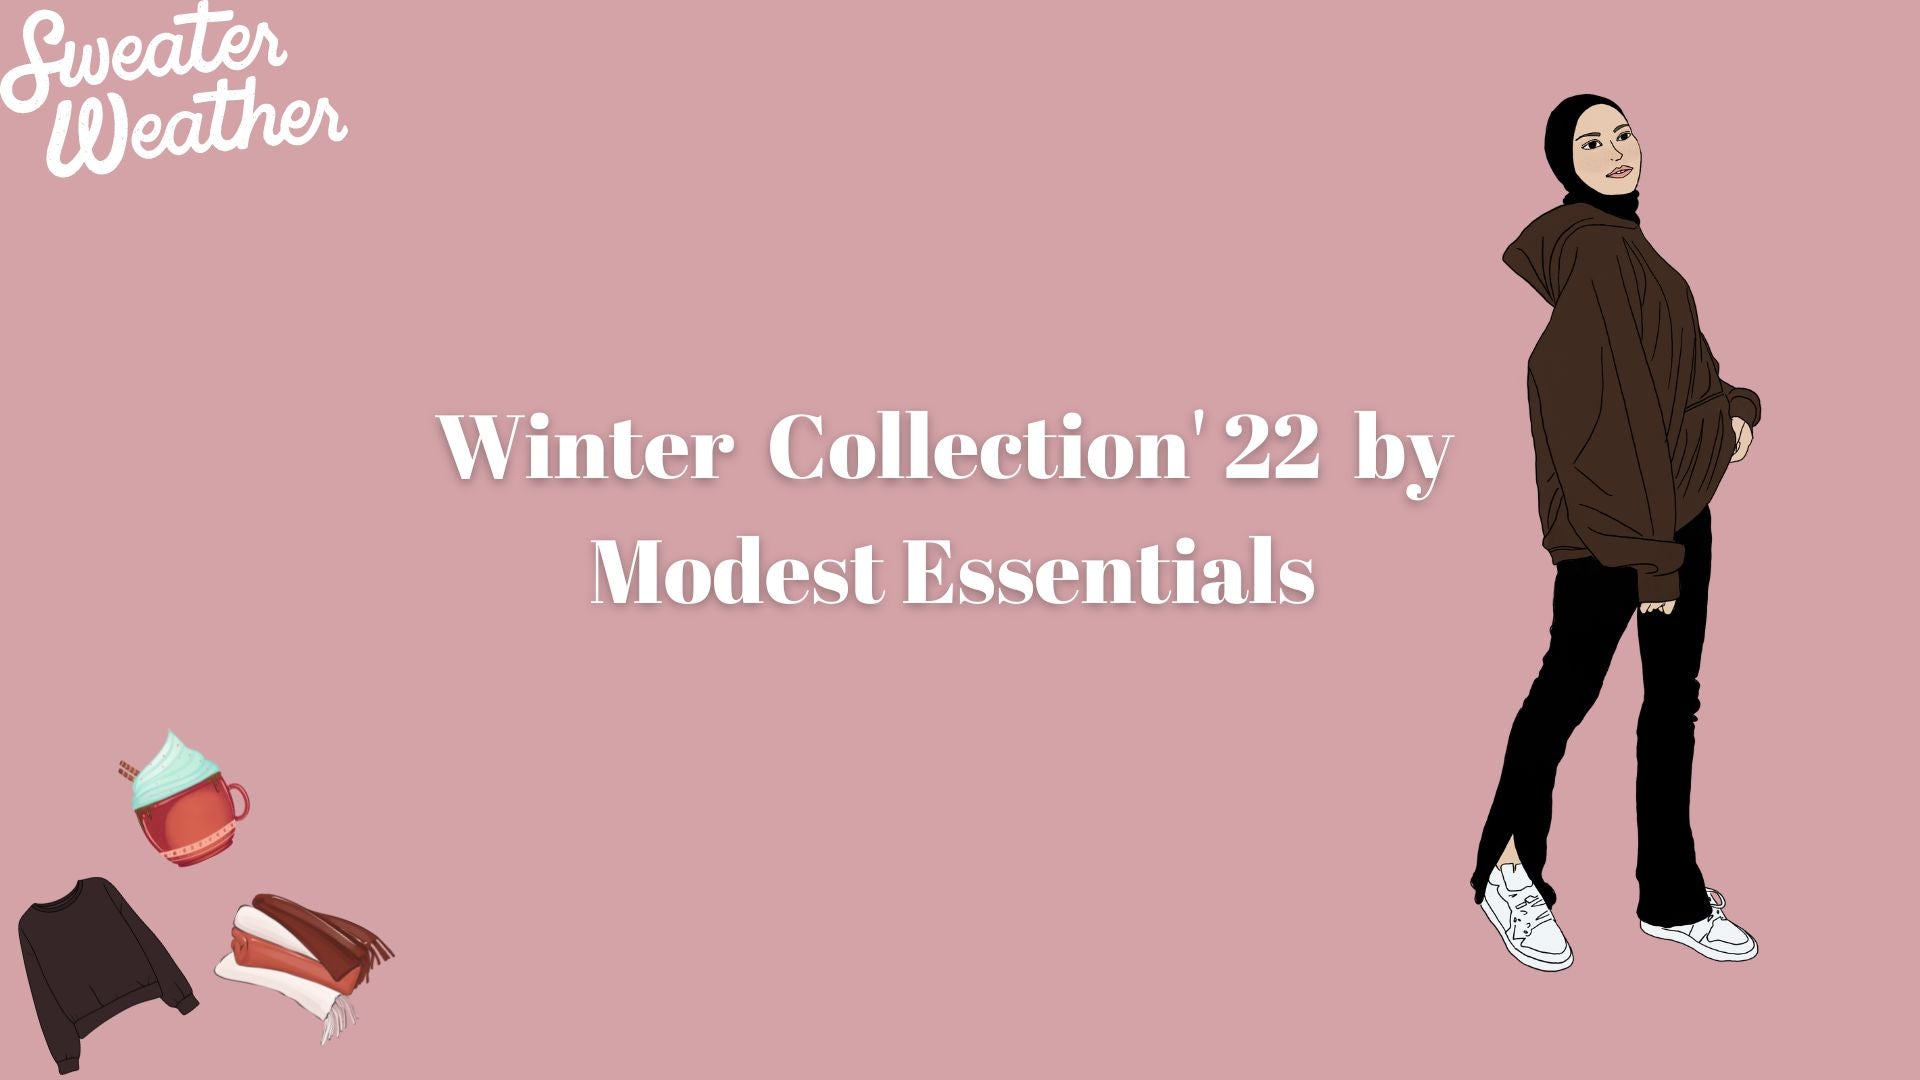 WINTER COLLECTION '22 BY MODEST ESSENTIALS – Modest Essentials